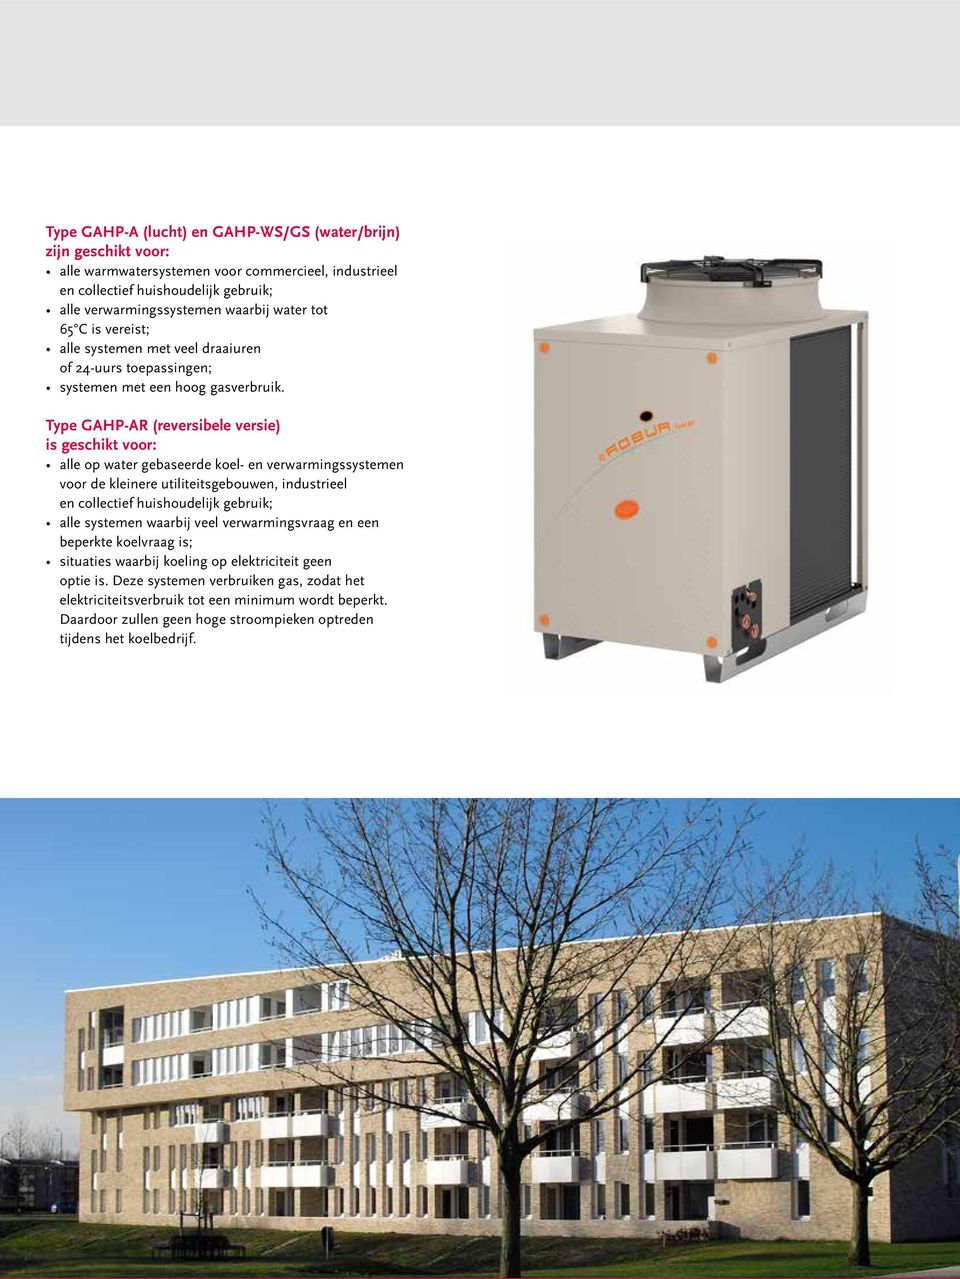 Type GAHP-AR (reversibele versie) is geschikt voor: alle op water gebaseerde koel- en verwarmingssystemen voor de kleinere utiliteitsgebouwen, industrieel en collectief huishoudelijk gebruik; alle